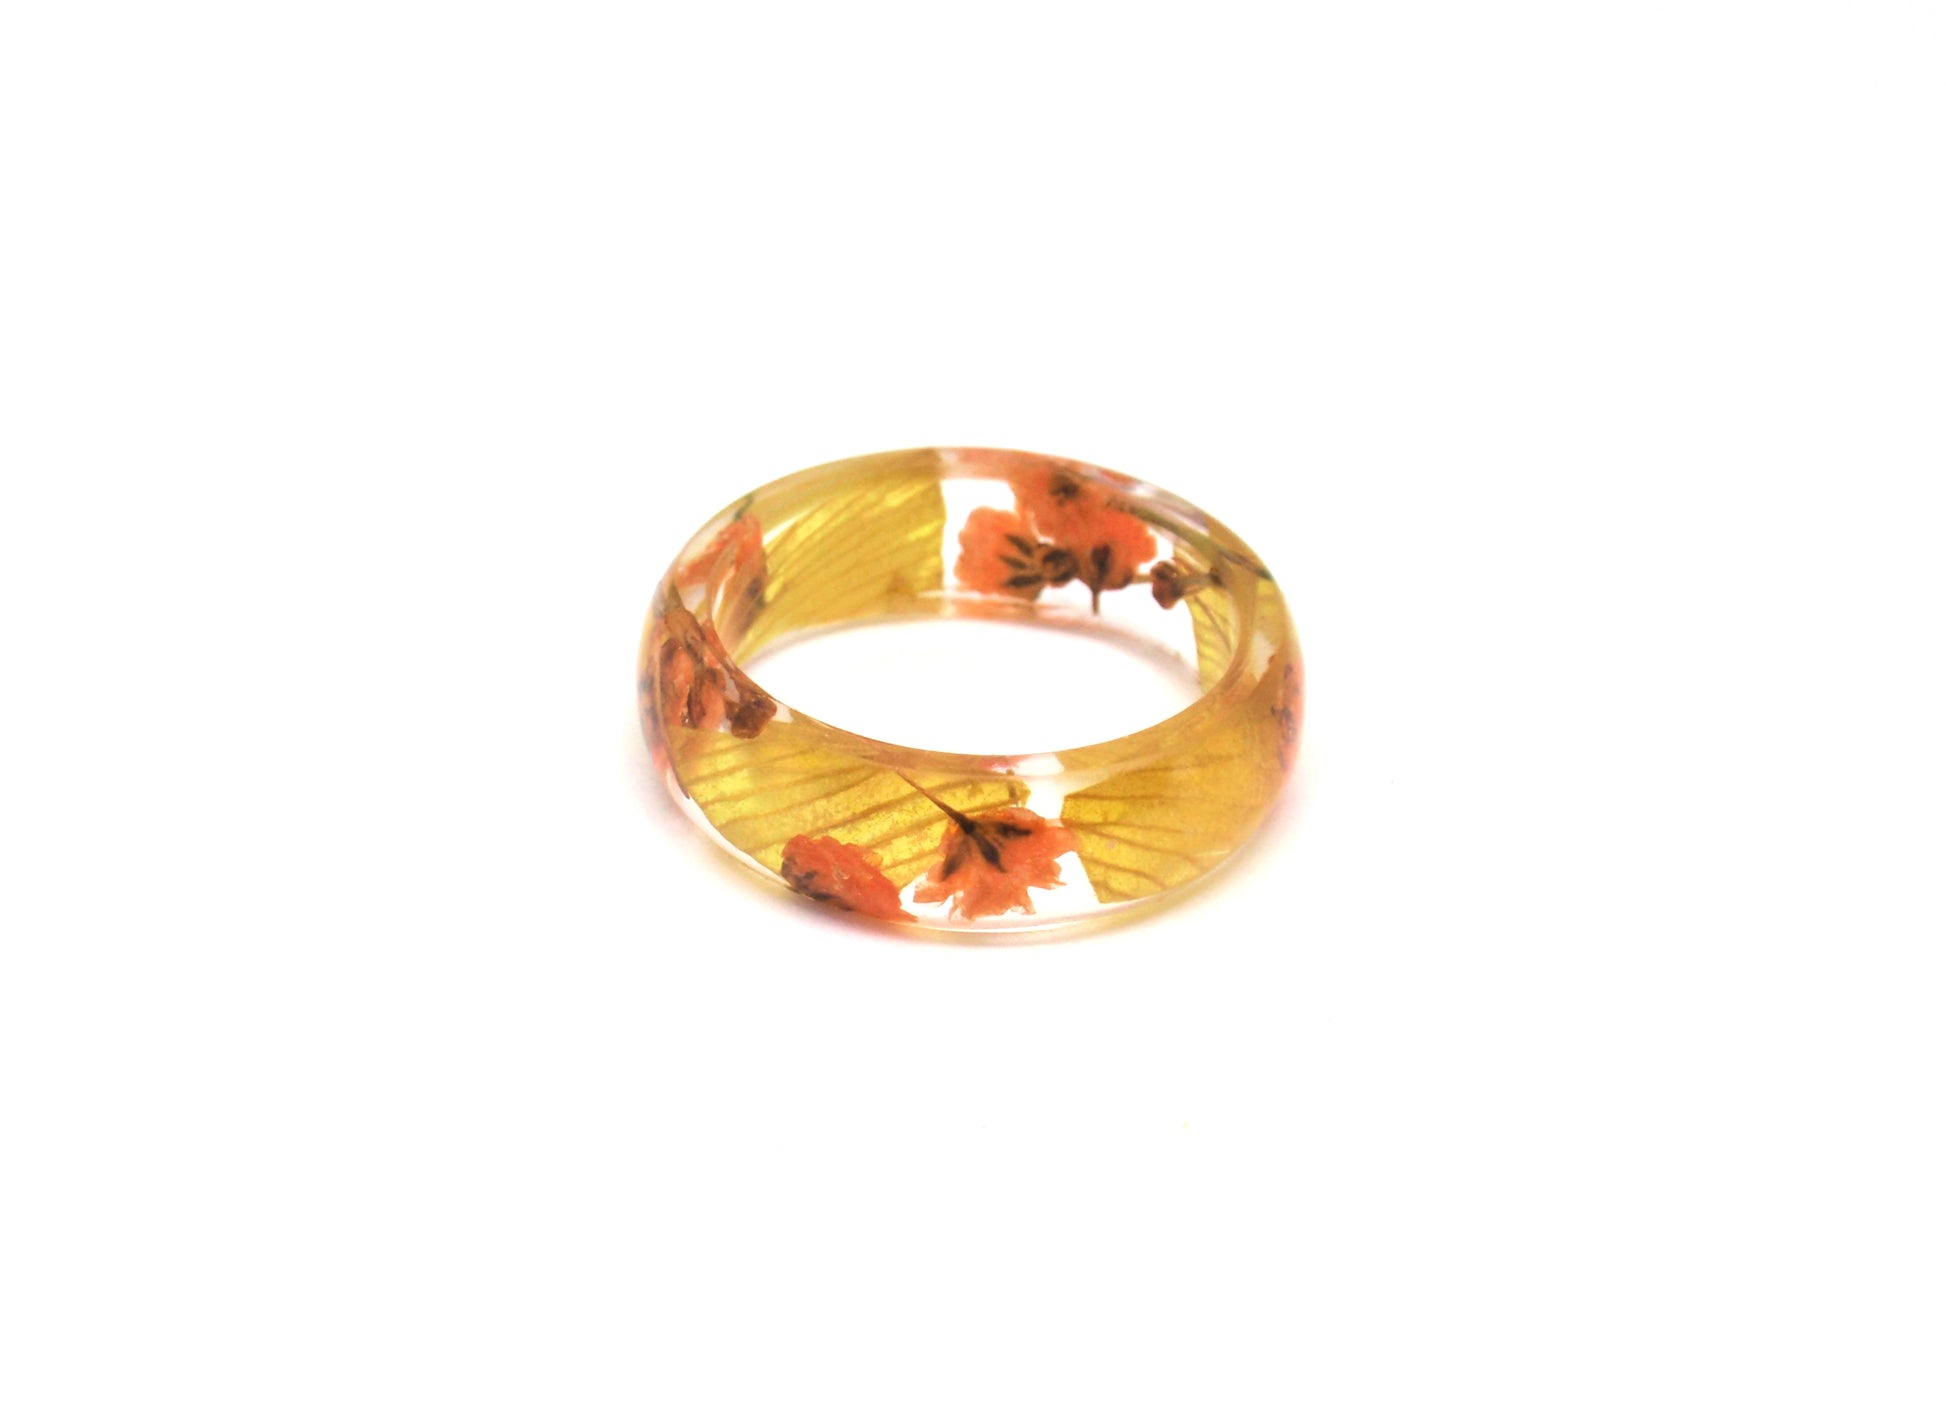 Autumn Flower ring